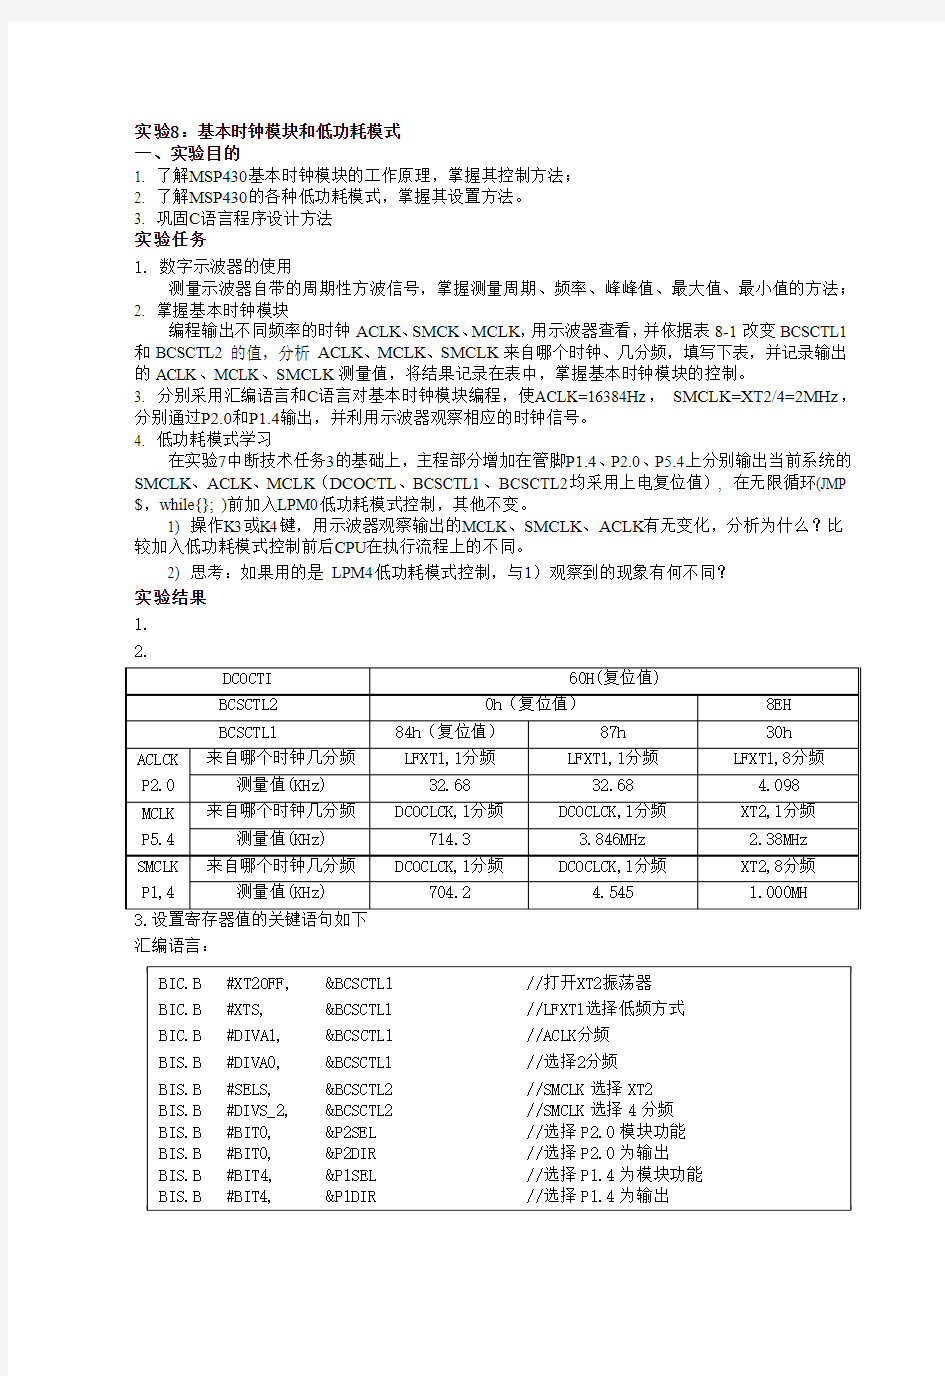 清华大学计算机硬件基础实验8、9报告